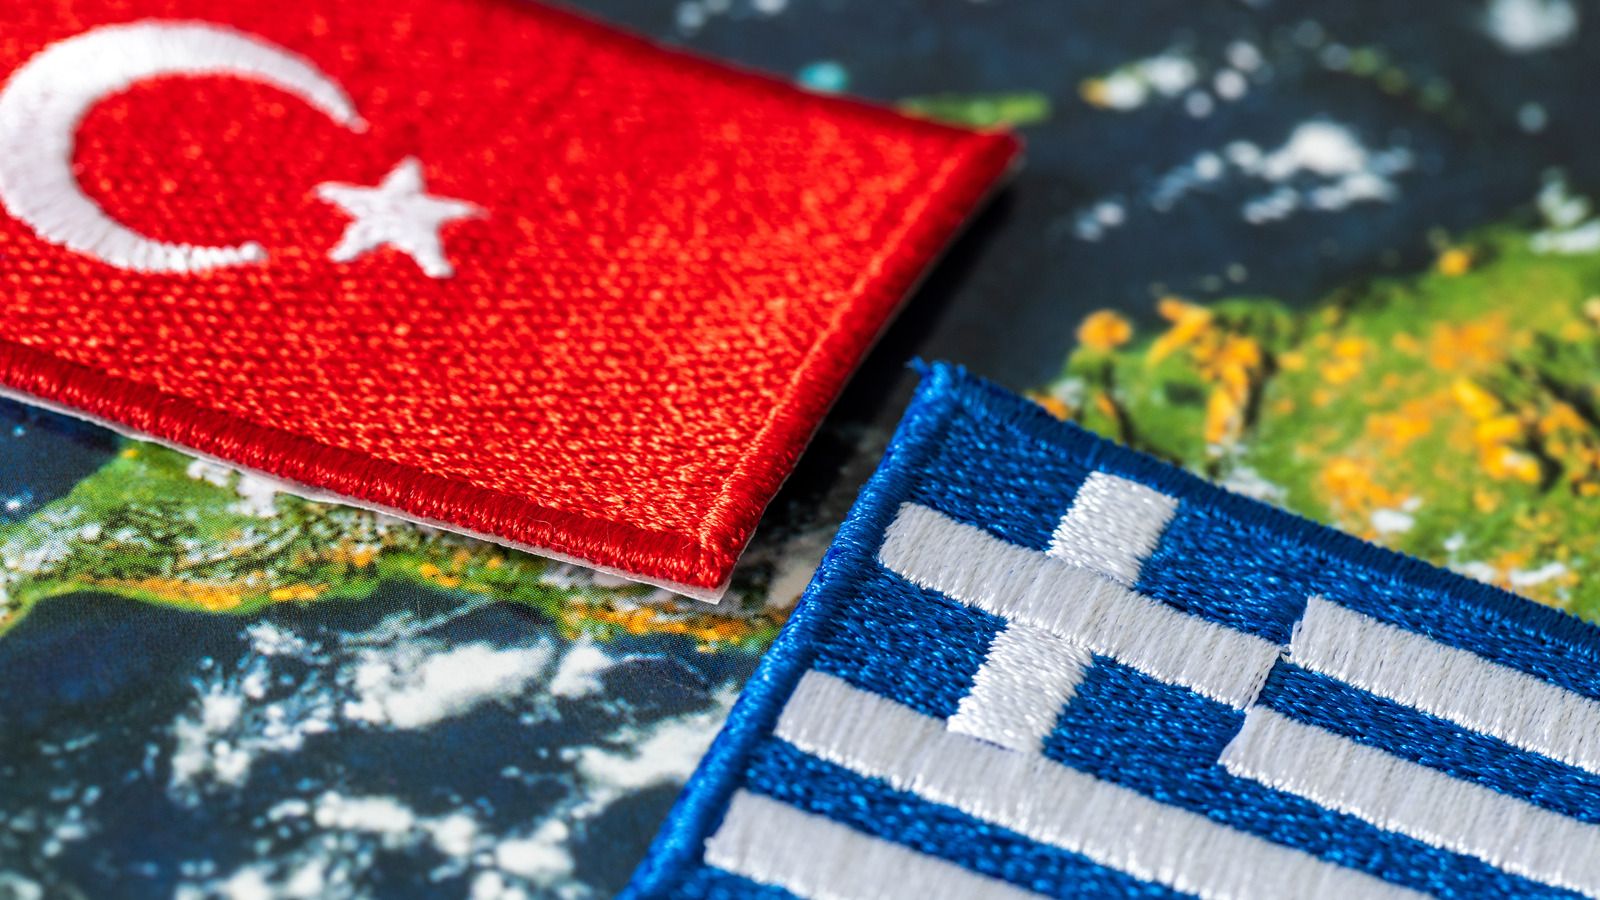 Yunanistan ile Türkiye arasındaki tatlı tartışması hiç bitmeyecek gibi görünüyor.